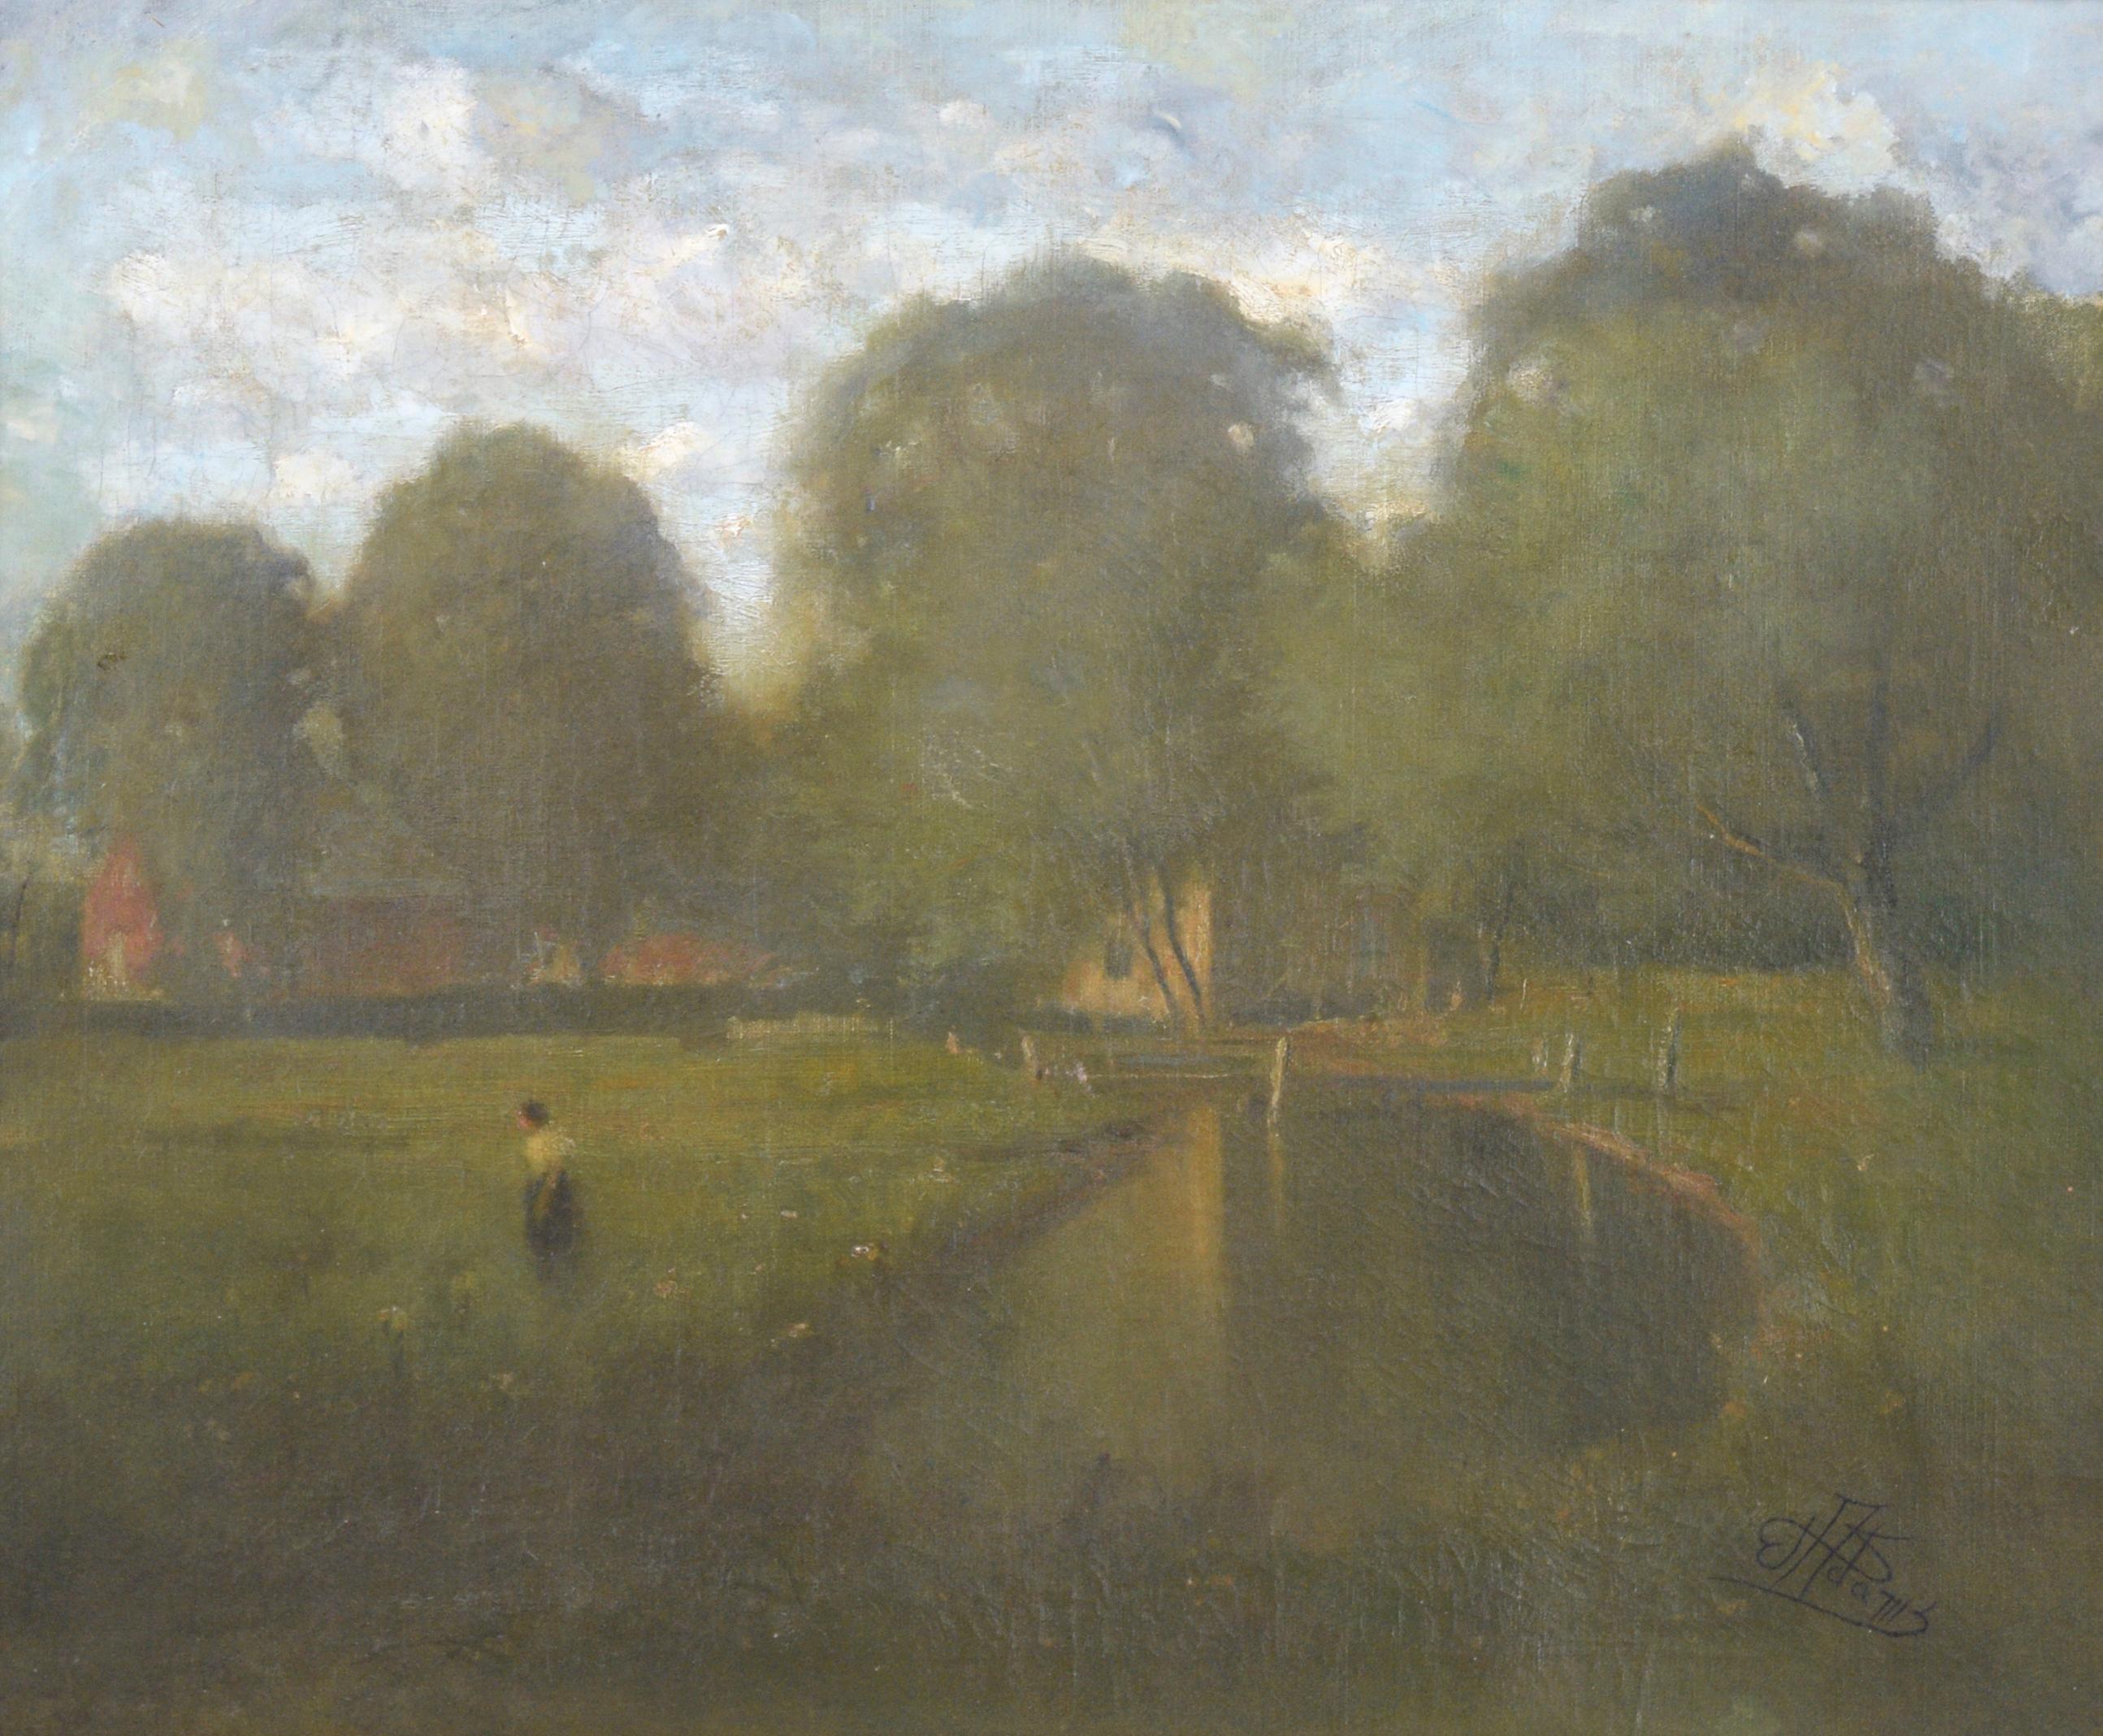 Tonalistische Landschaft des späten 19. Jahrhunderts – Afternoon by the Pond – Painting von Willis Seaver Adams